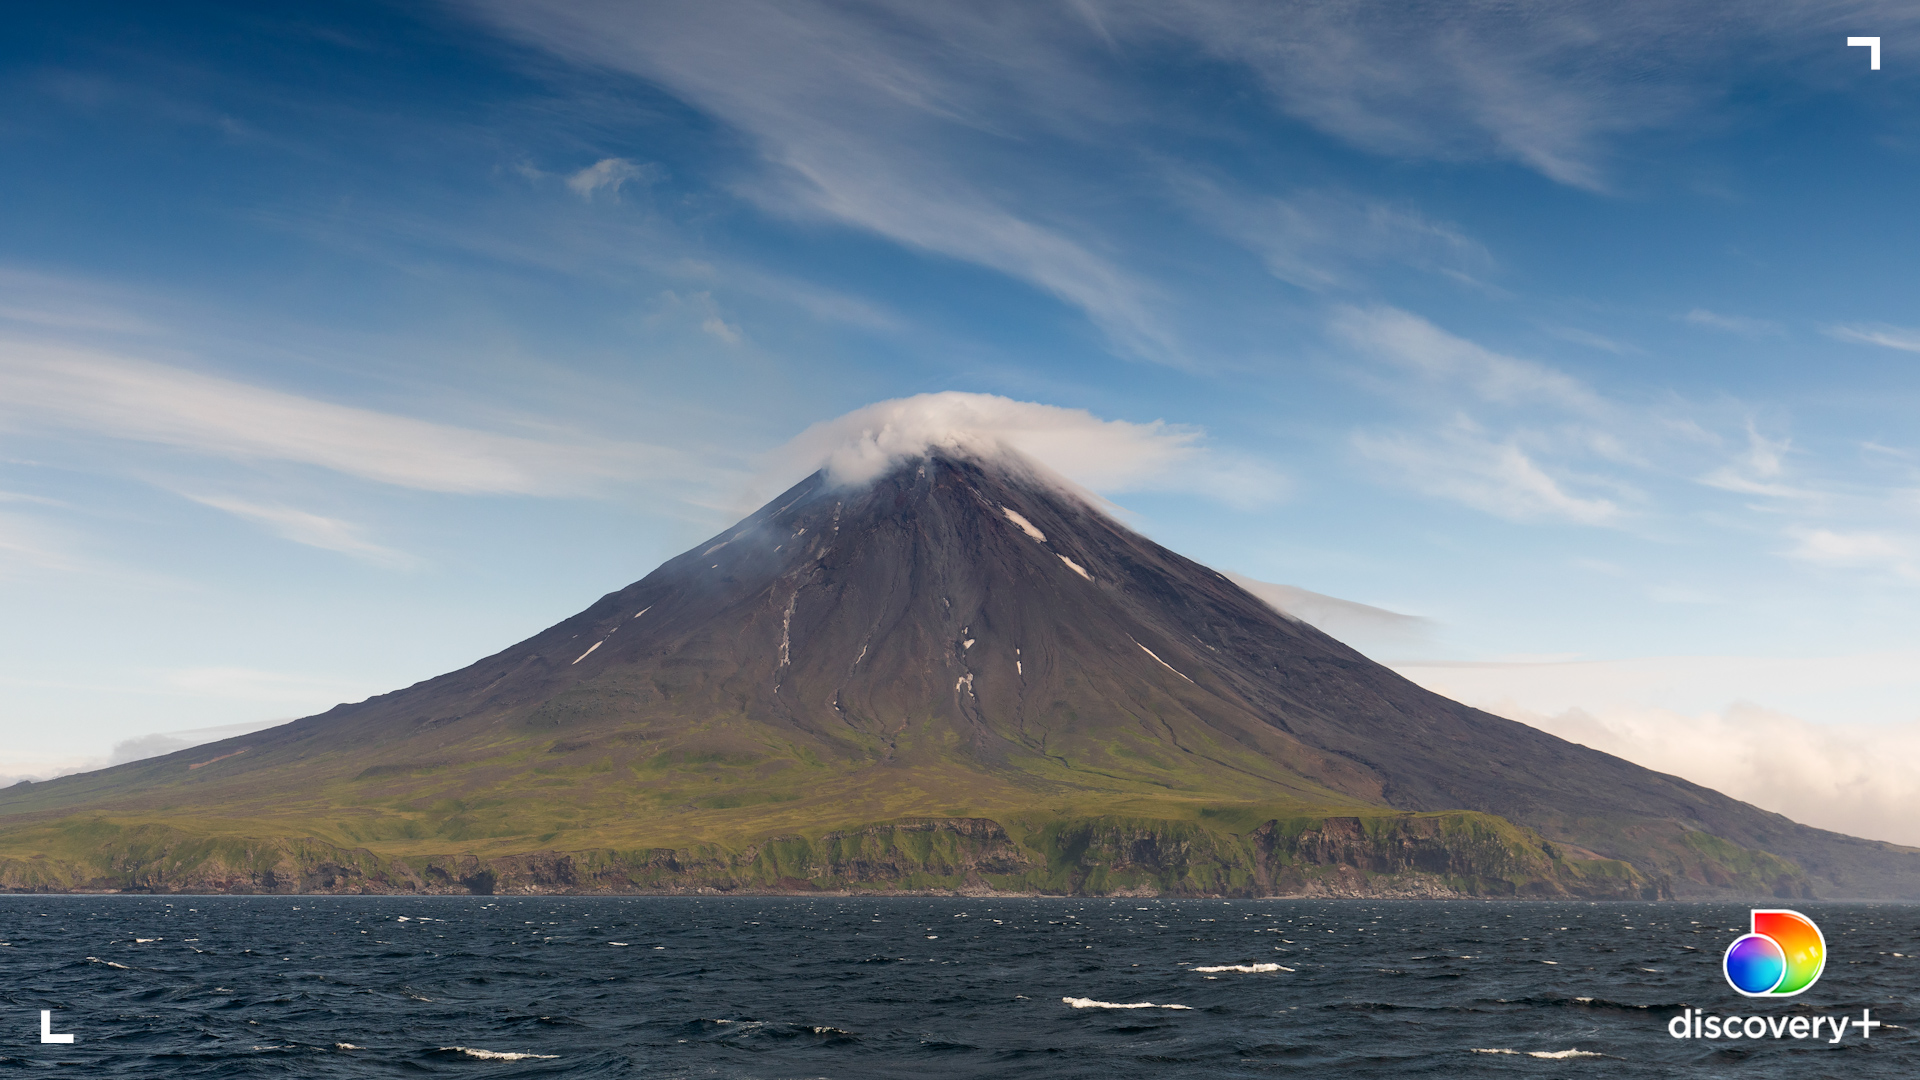 The volcano Bogoslof. (Photo: Ian Shive/discovery+)